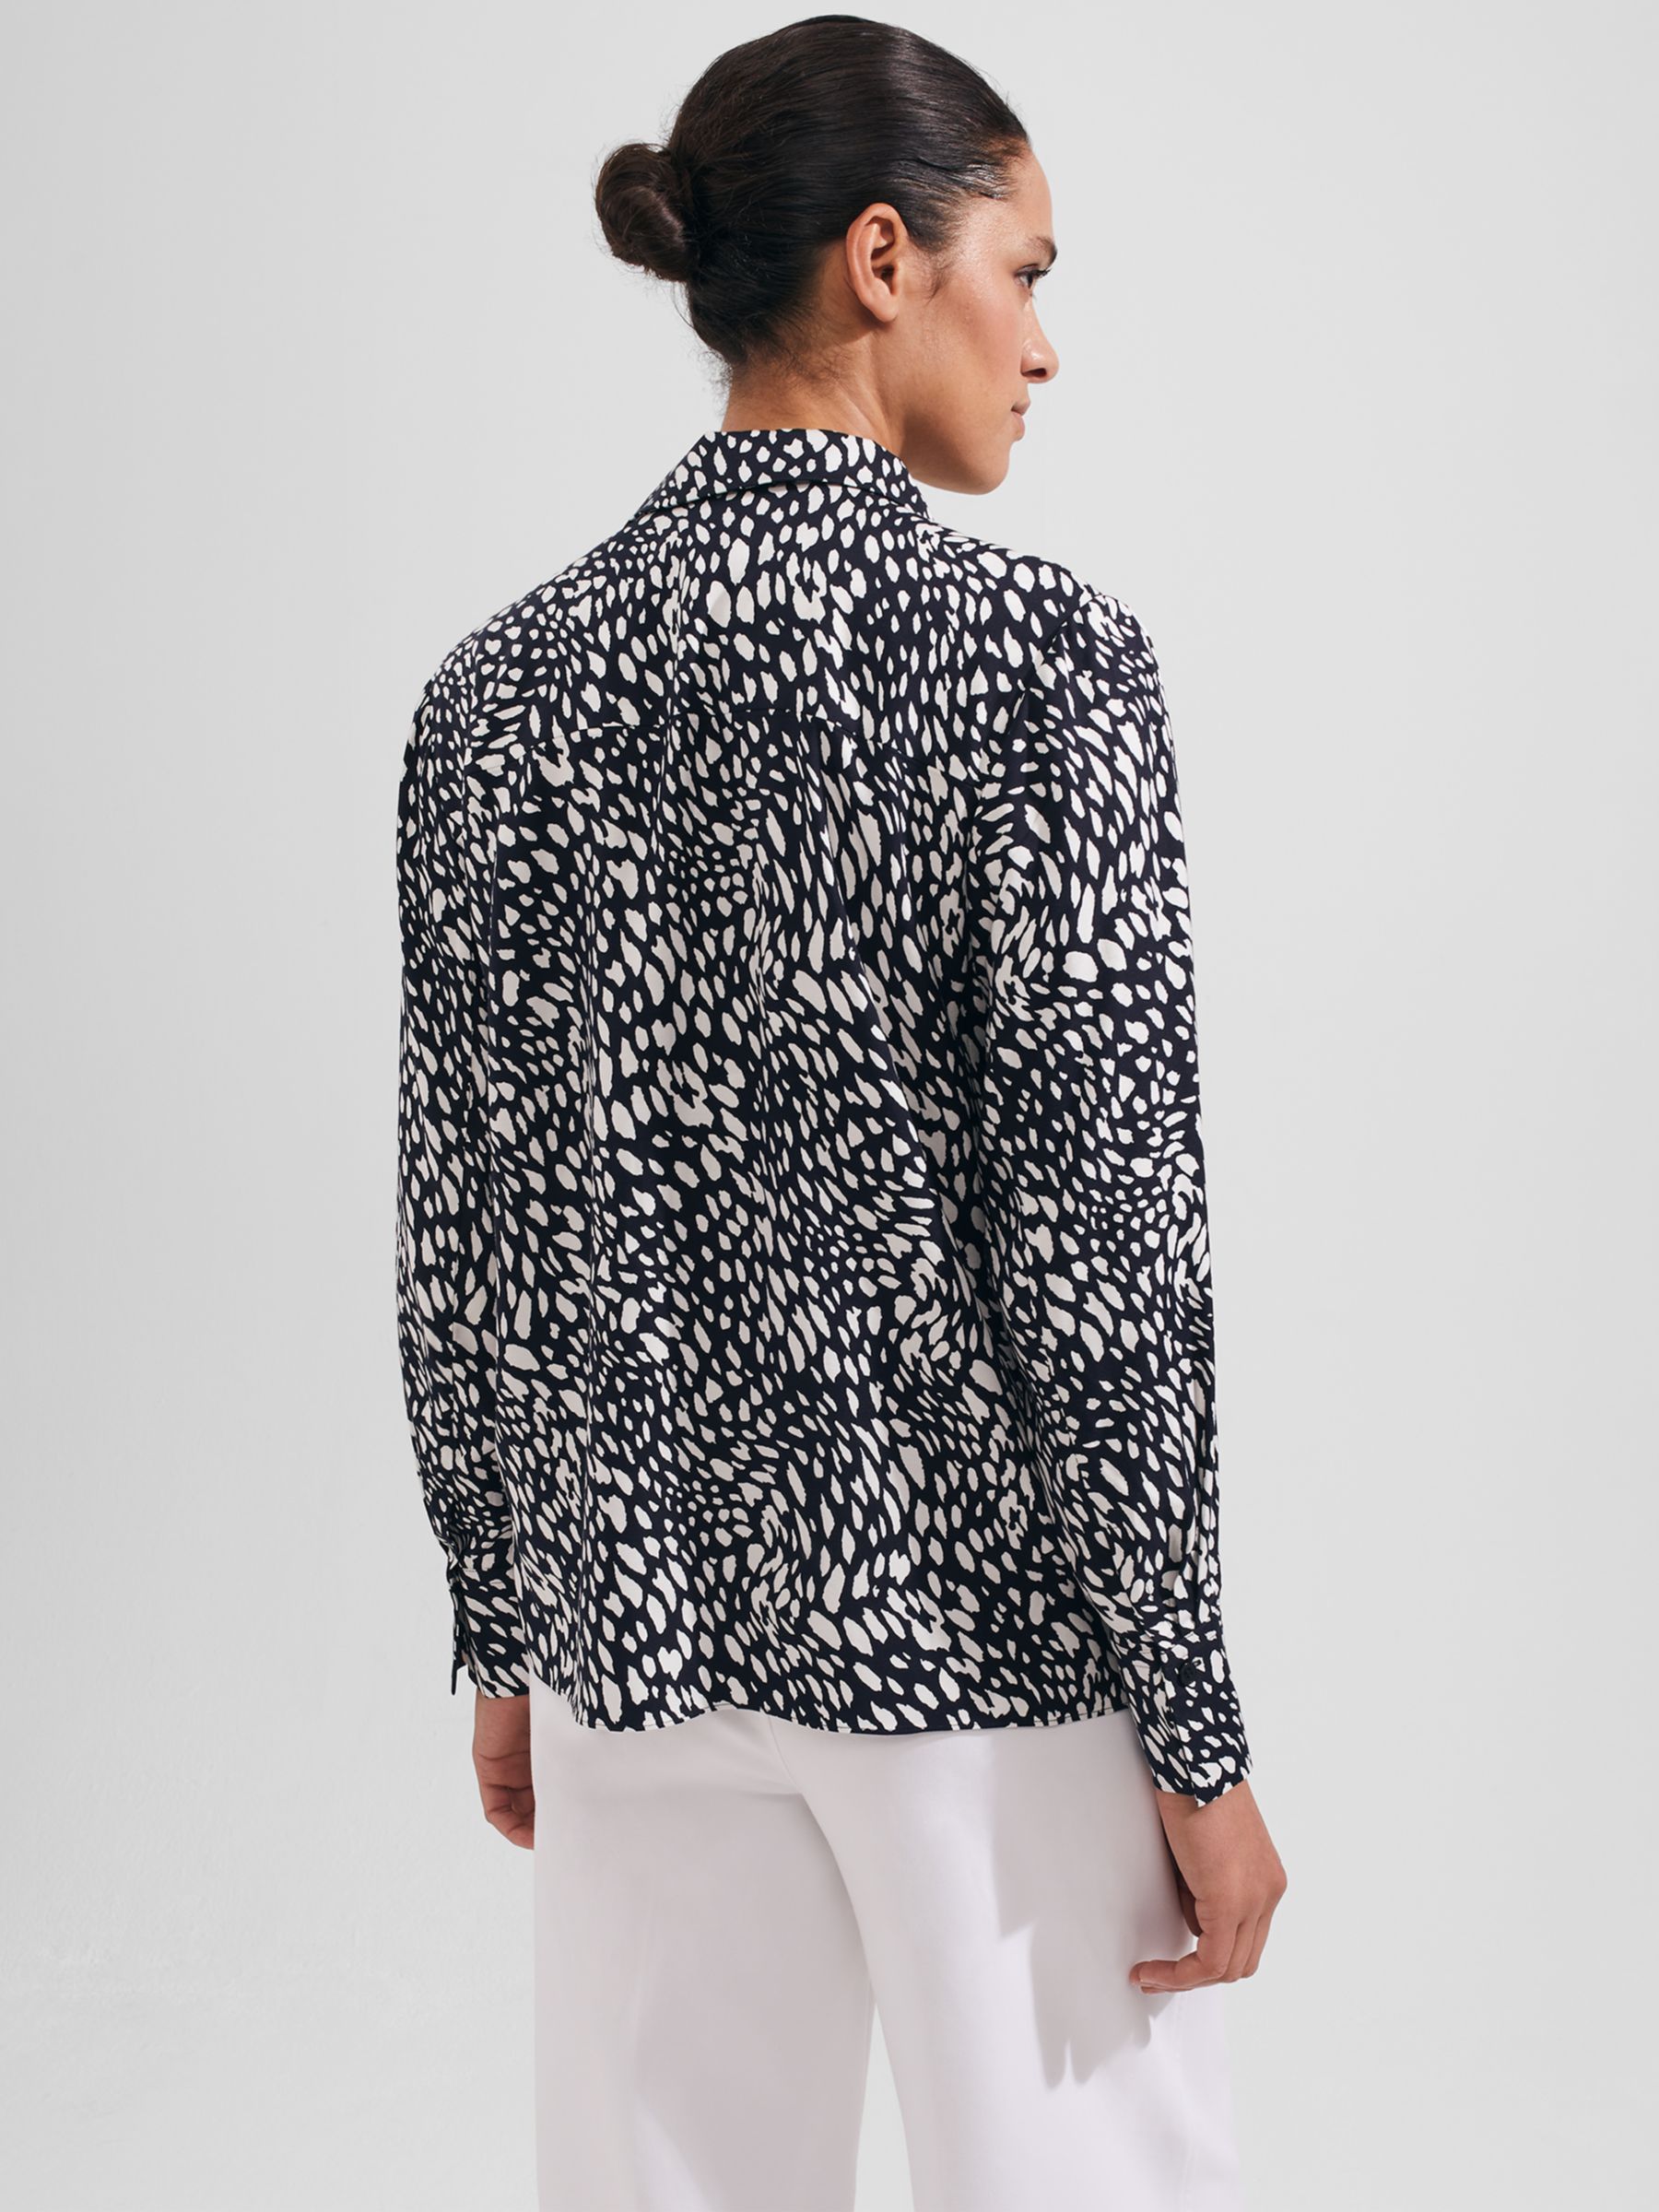 Hobbs Katia Shirt, Navy/Ivory at John Lewis & Partners